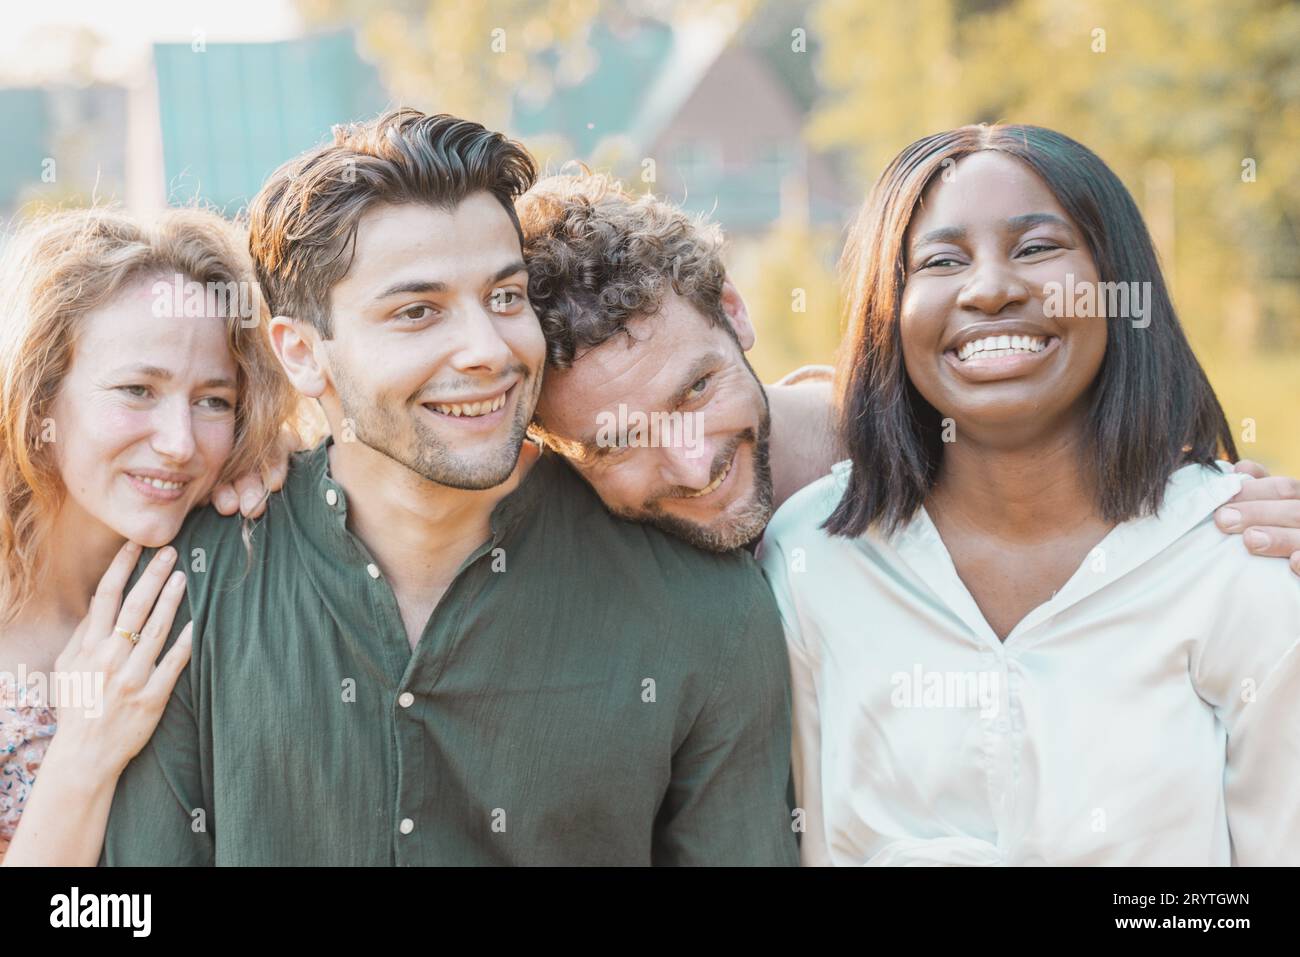 Strahlende Vielfalt: Jugendliche Freundschaft in einem freudigen Selfie, Stockfoto